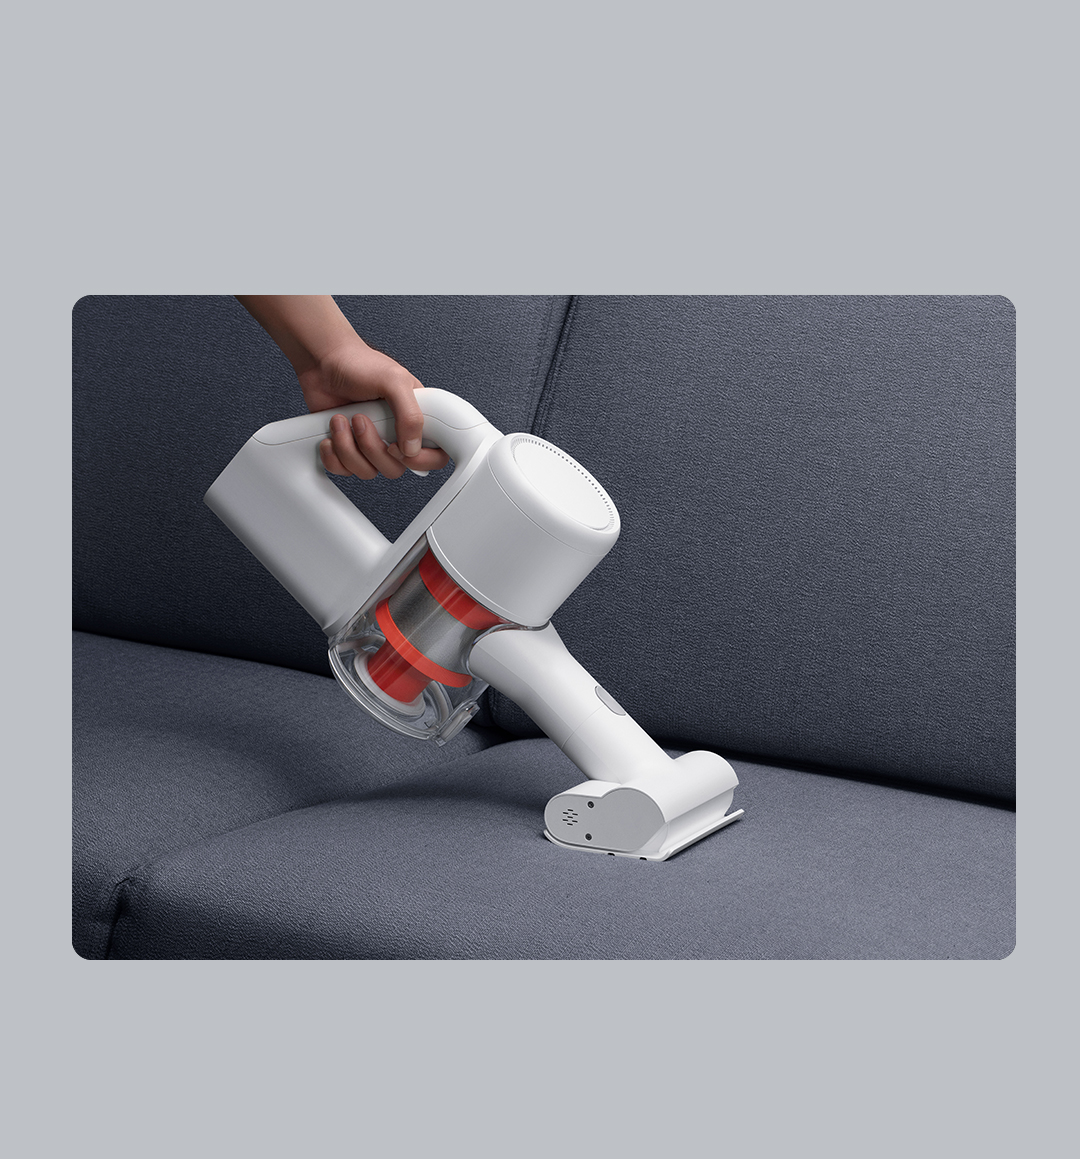 Mi Handheld Vacuum Cleaner丨Xiaomi España - España